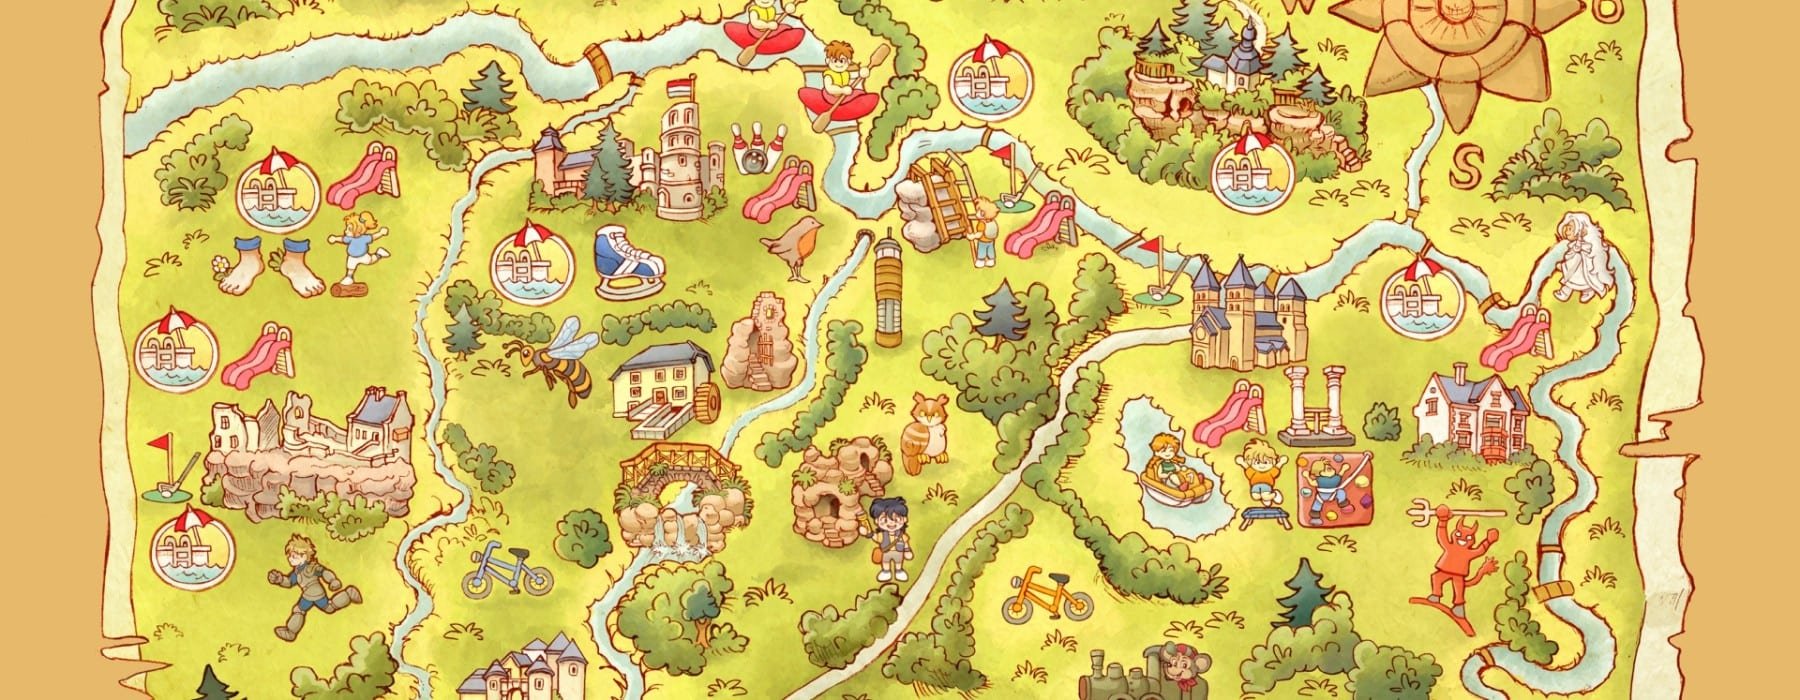 Игра путешествие в лес. Сказочная карта. Карта для детей. Карта рисунок. Карта сказочного королевства.